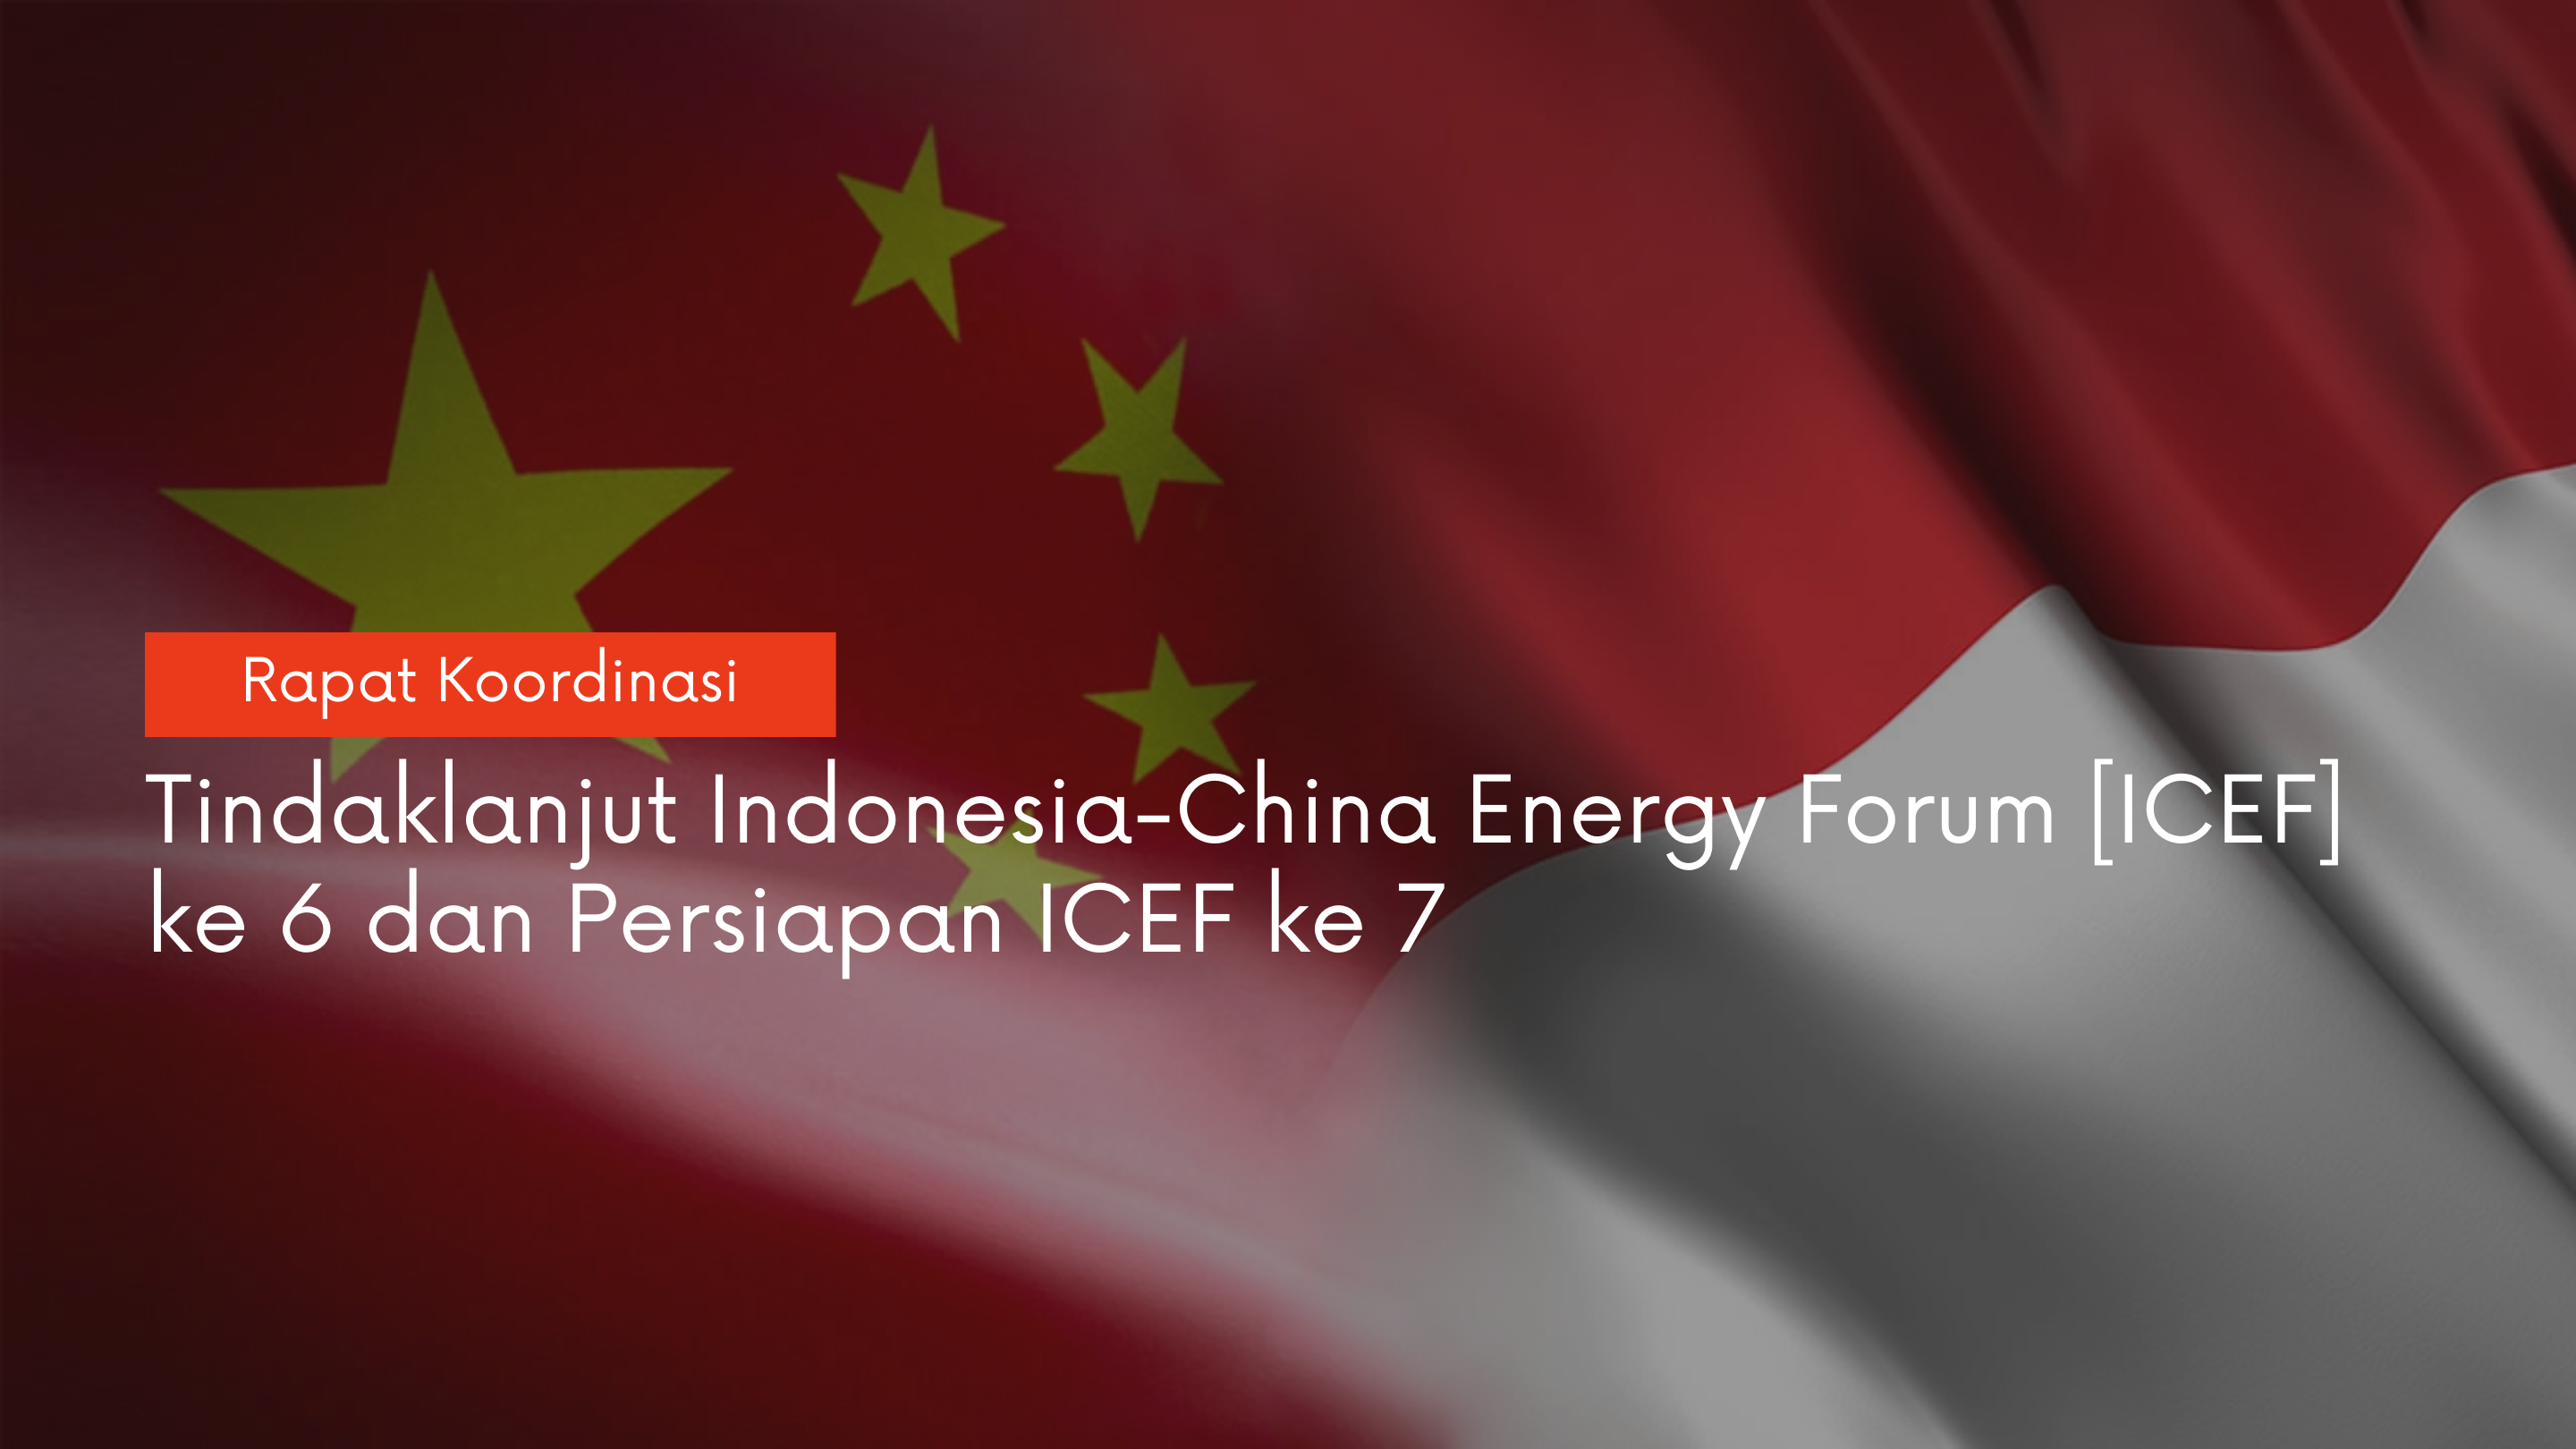 Persiapan Indonesia Sebagai Tuan Rumah Indonesia-China Energy Forum ke-7